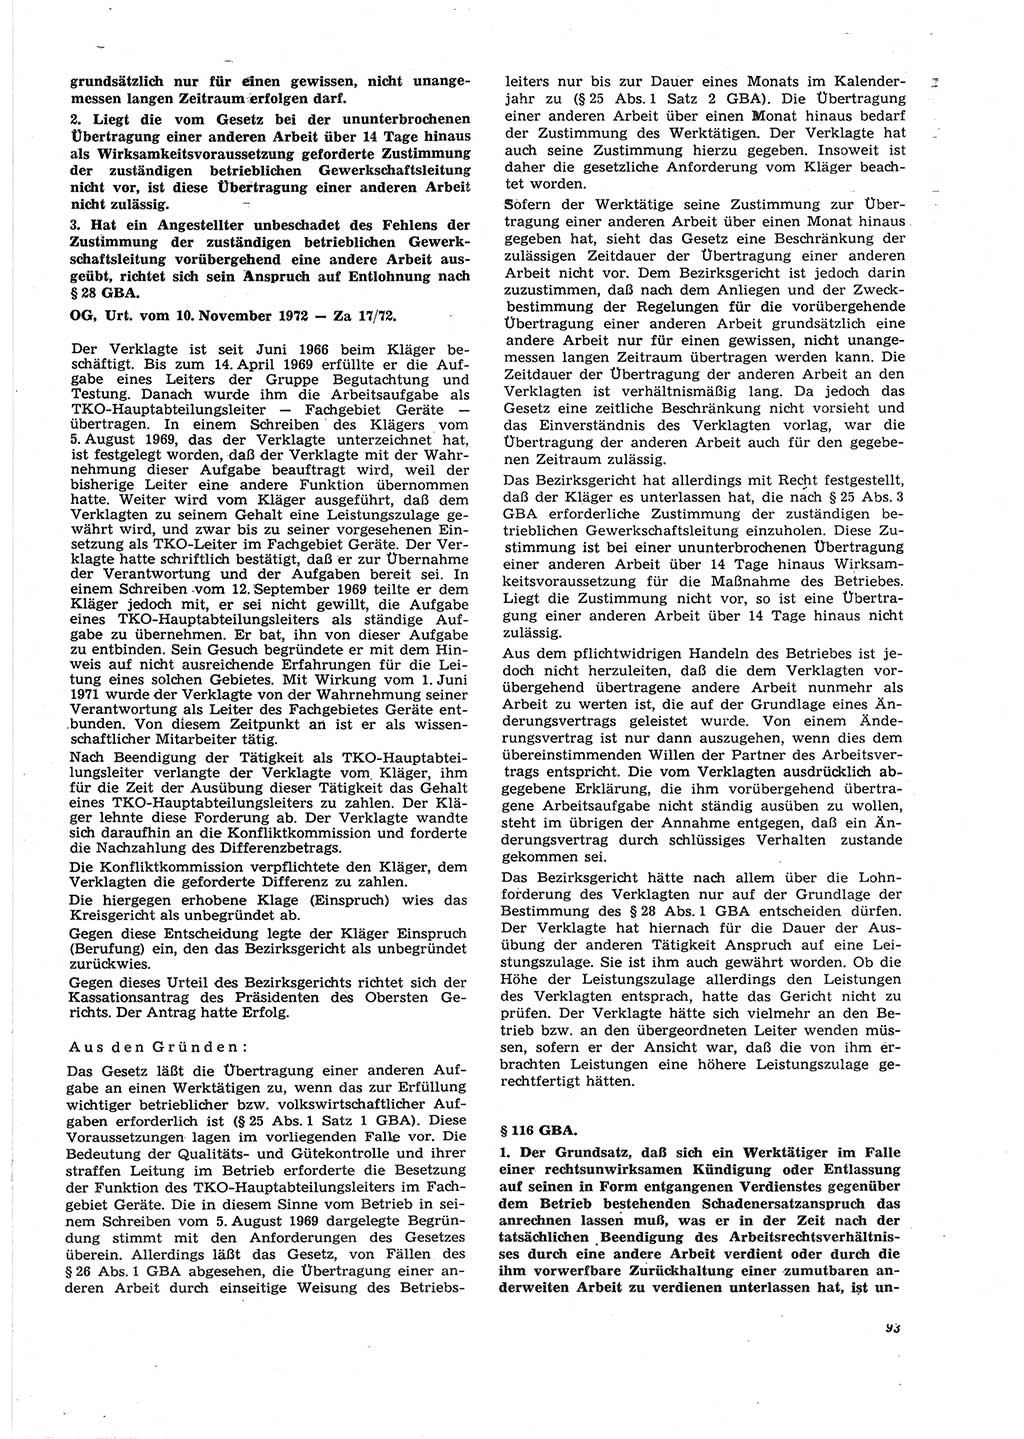 Neue Justiz (NJ), Zeitschrift für Recht und Rechtswissenschaft [Deutsche Demokratische Republik (DDR)], 27. Jahrgang 1973, Seite 93 (NJ DDR 1973, S. 93)